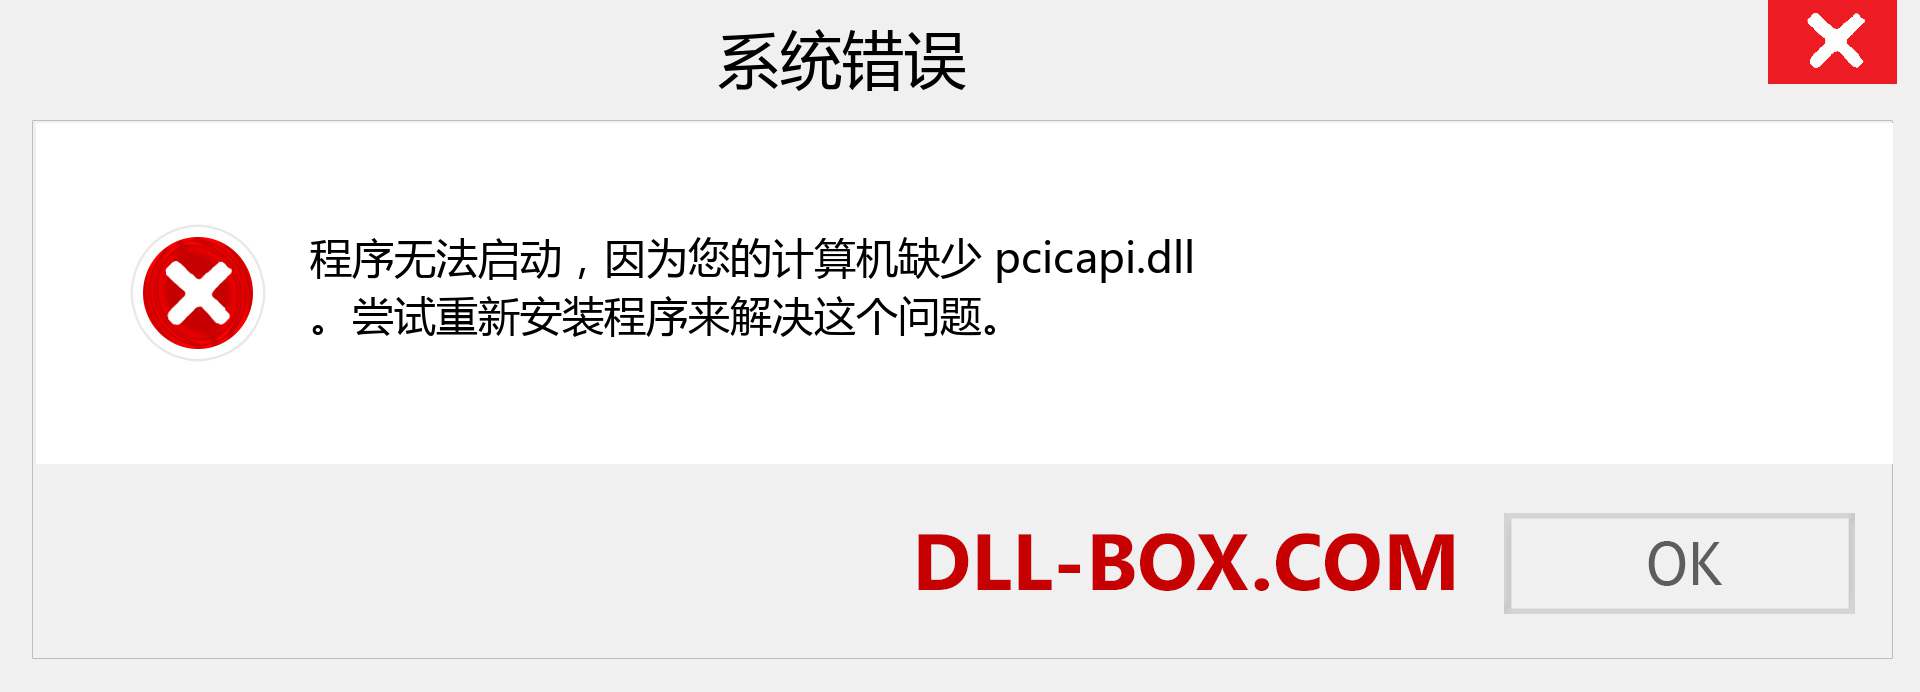 pcicapi.dll 文件丢失？。 适用于 Windows 7、8、10 的下载 - 修复 Windows、照片、图像上的 pcicapi dll 丢失错误